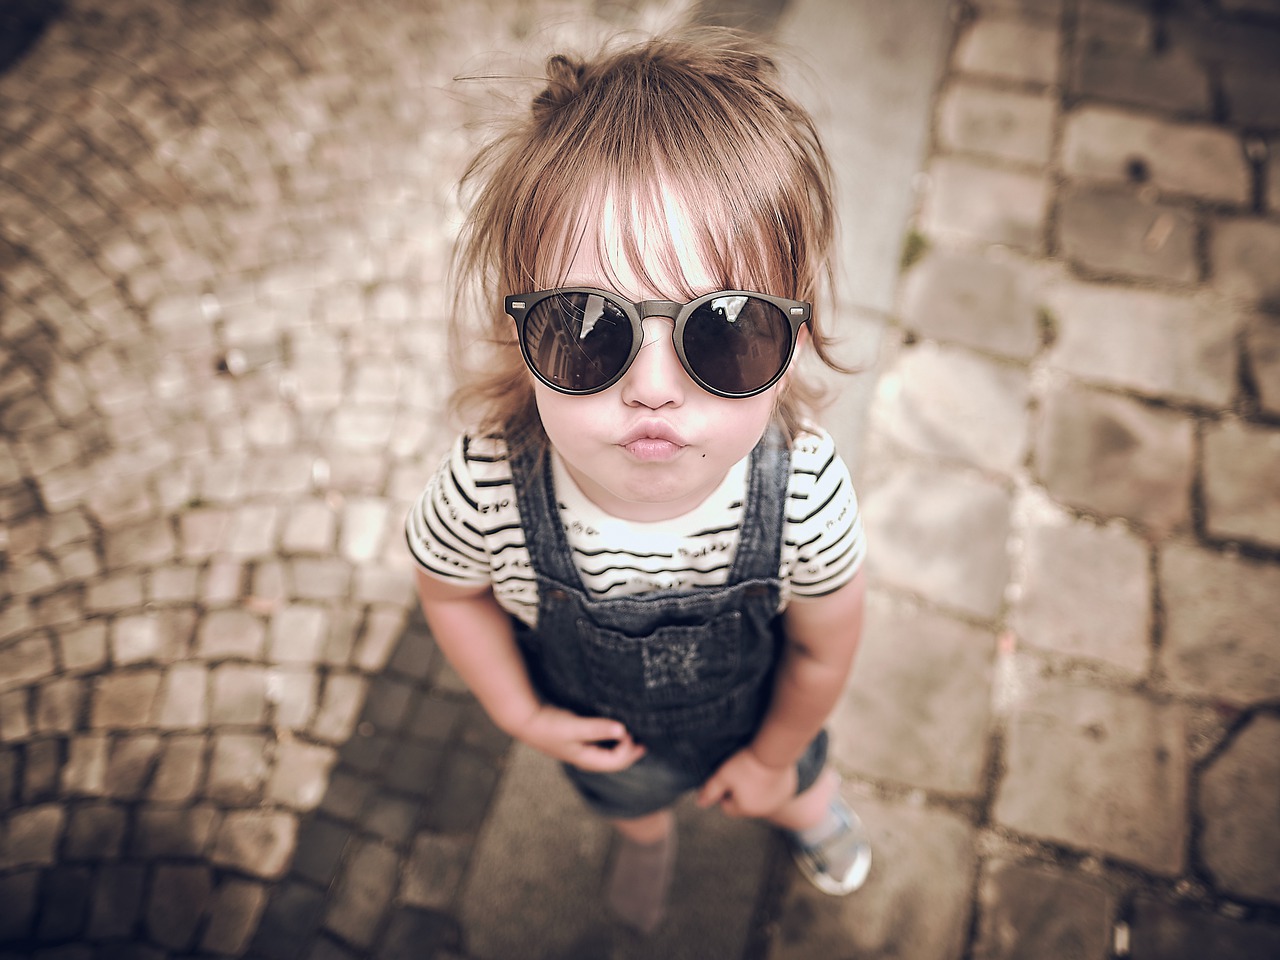 Baby girl wearing sunglasses